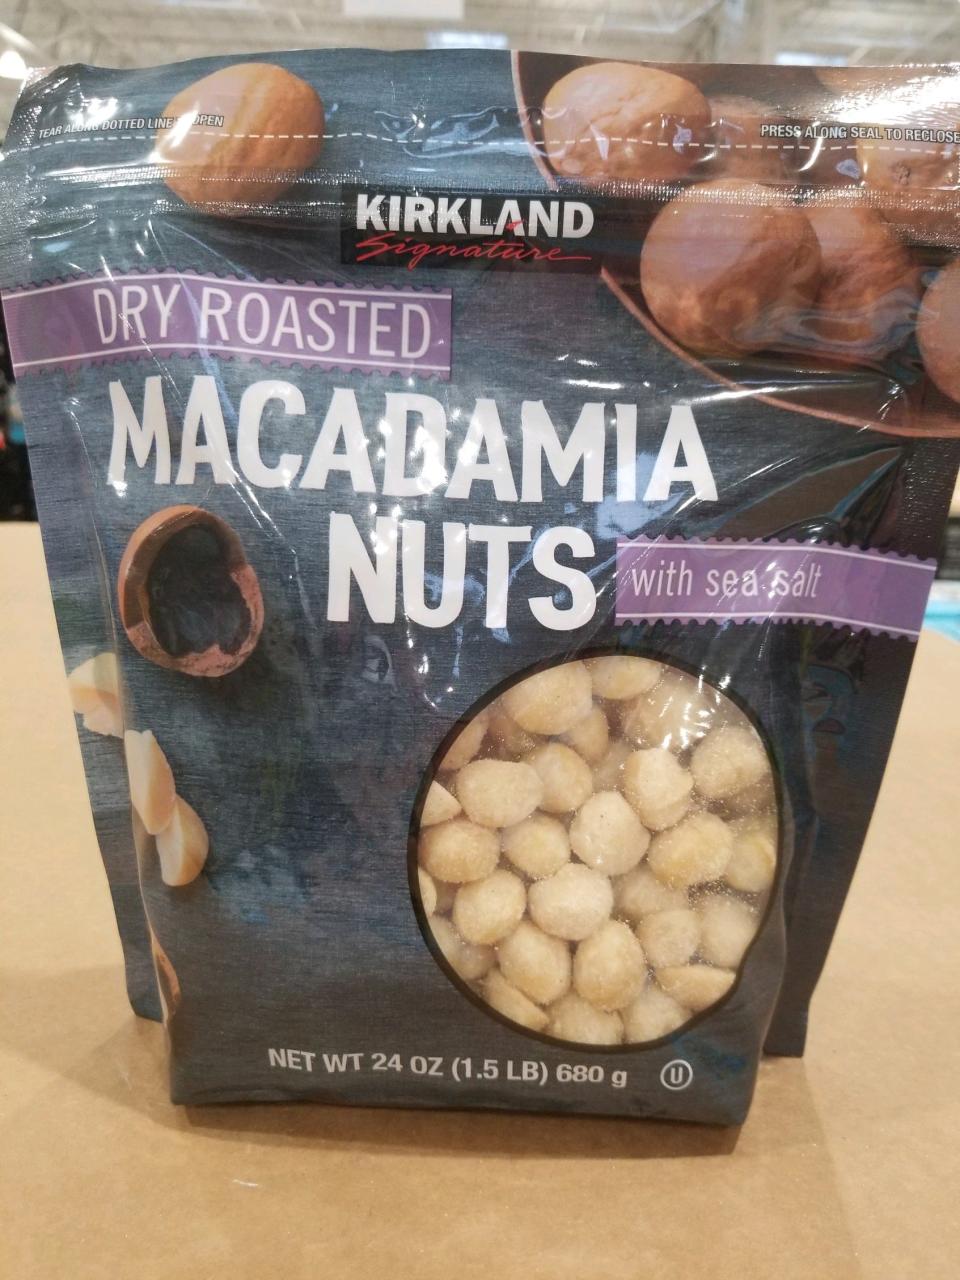 Kirkland dry-roasted macadamia nuts with sea salt.